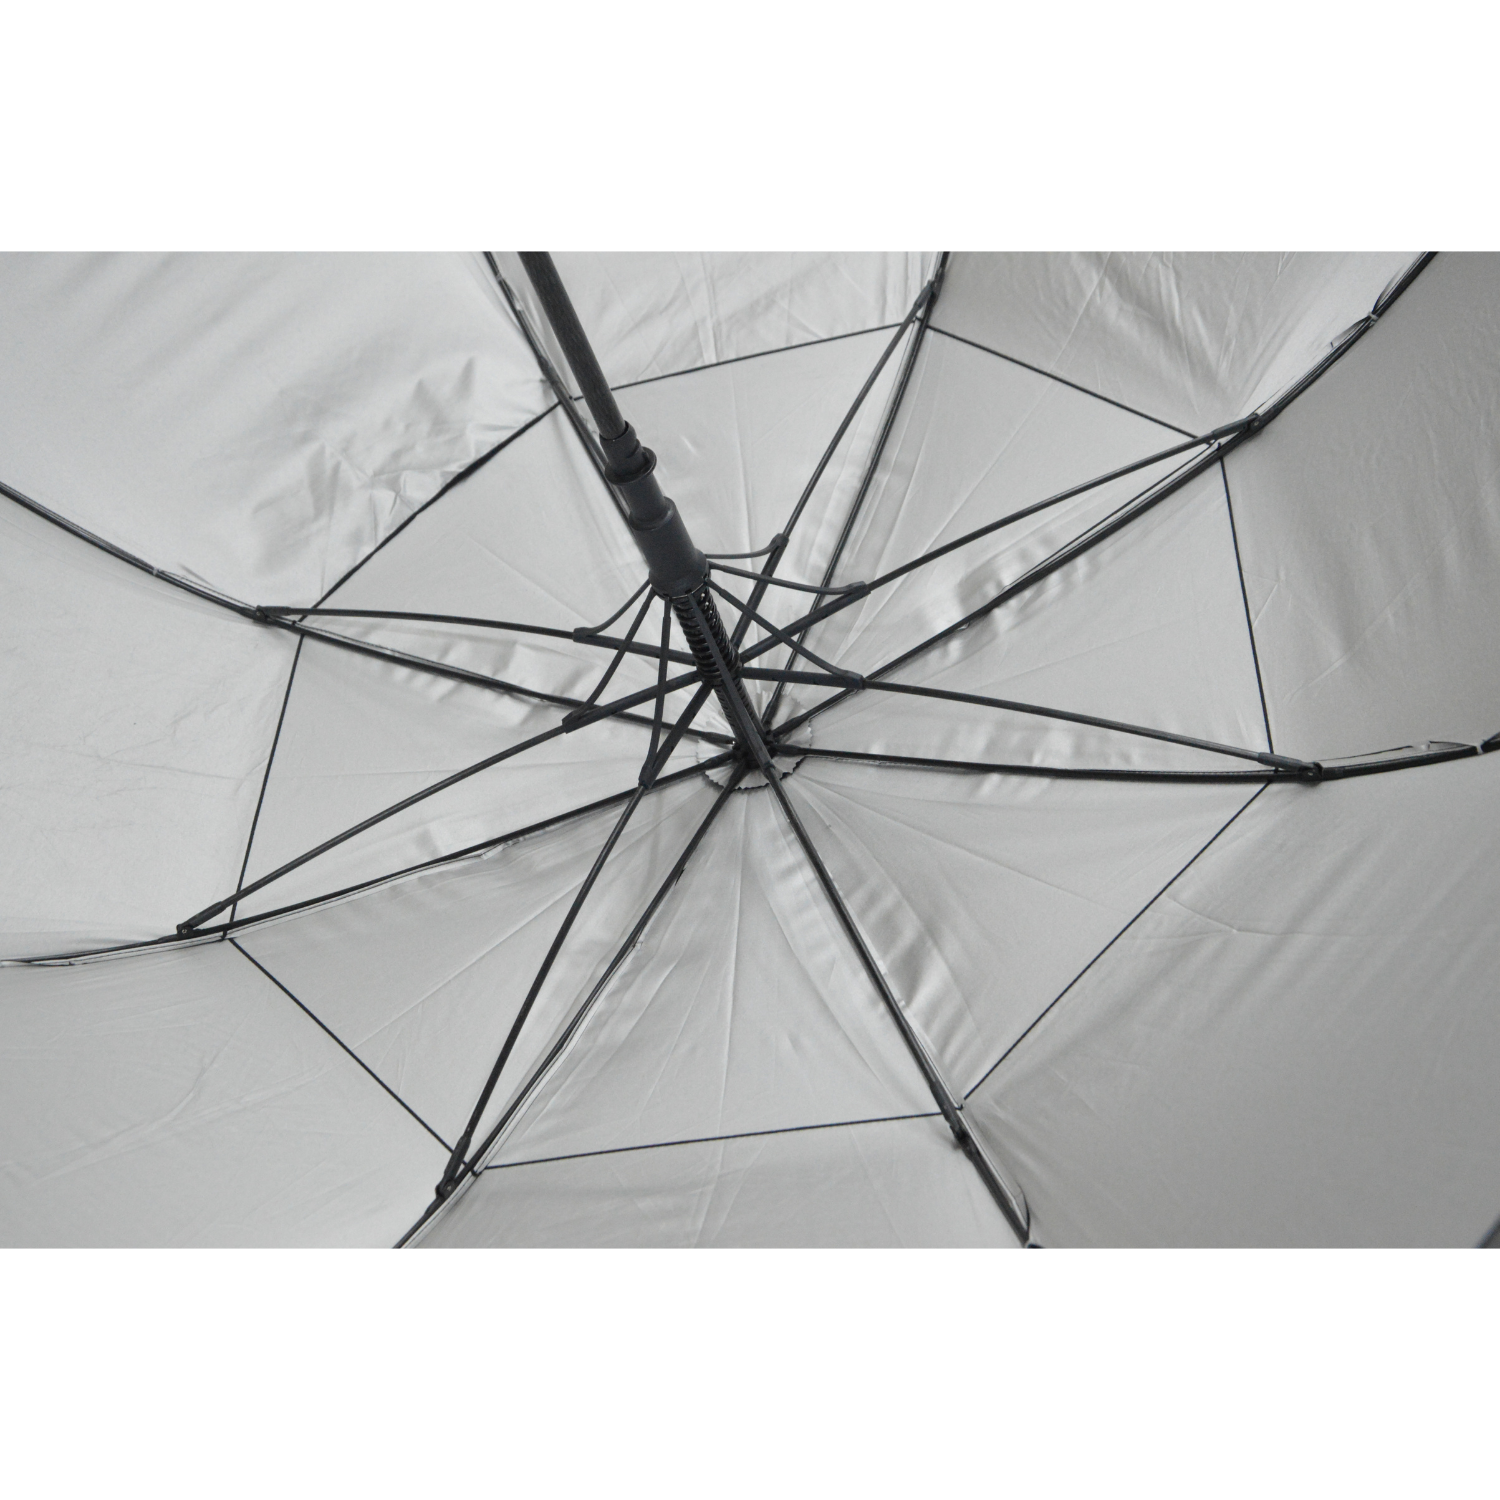 GolfBasic EP Coated Double Canopy Golf Umbrella (Black)